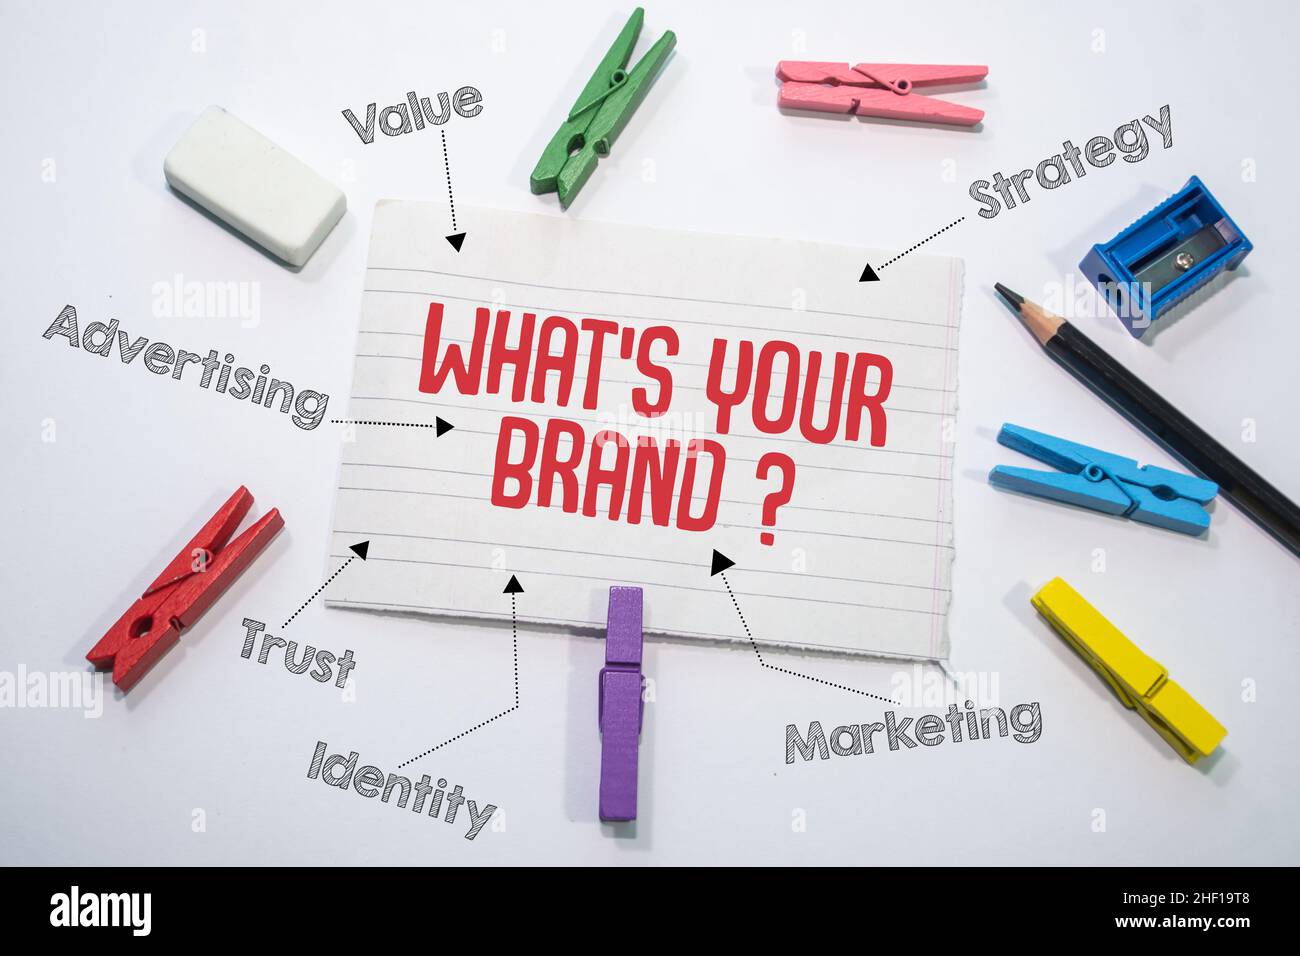 Affiche textuelle indiquant quelle est votre marque ?Stratégie, Marketing, identité, confiance, Publicité,Valeur Banque D'Images